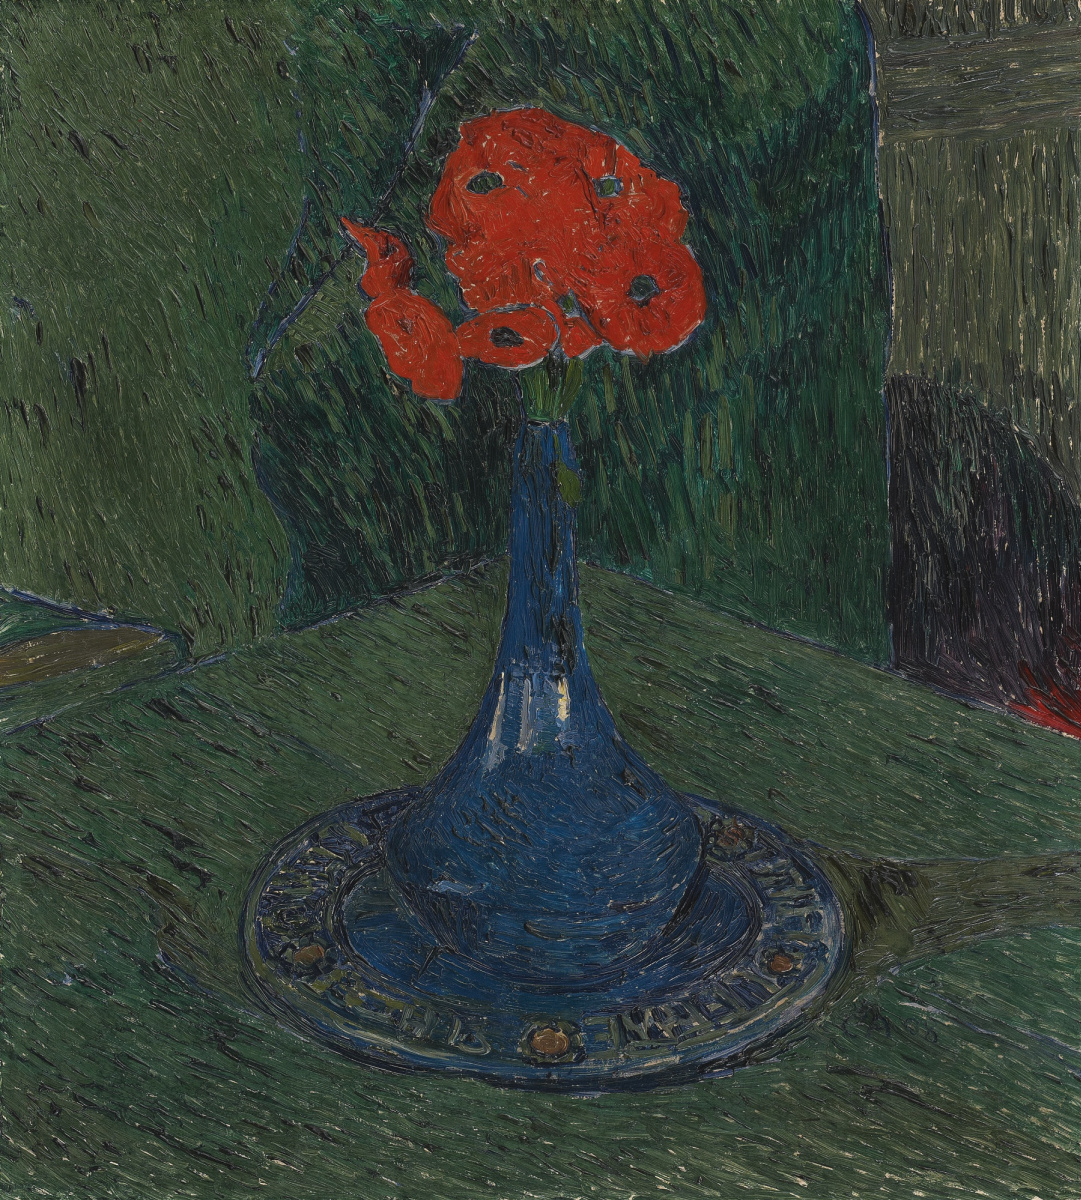 Cuno Amiet. Poppies in blue vase